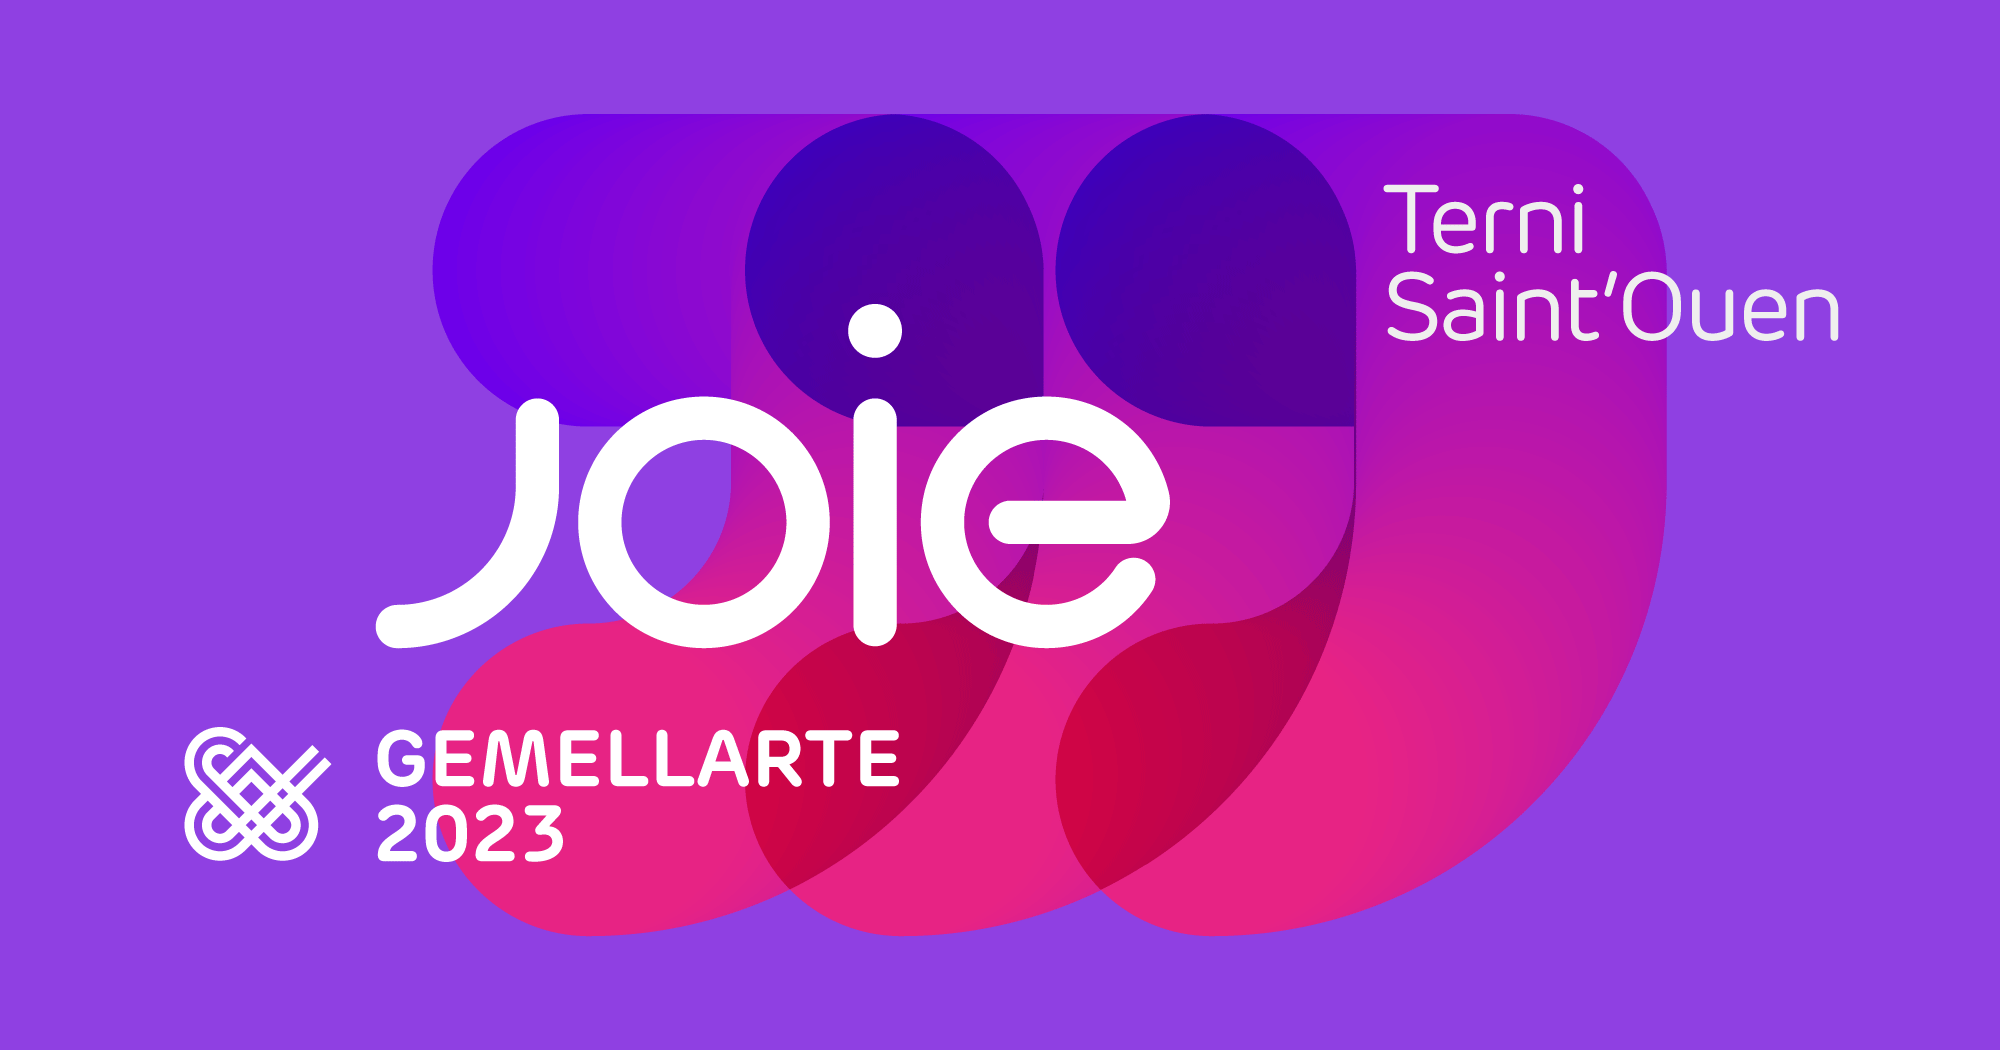 Gemellarte 2023 - JOIE - brand identity